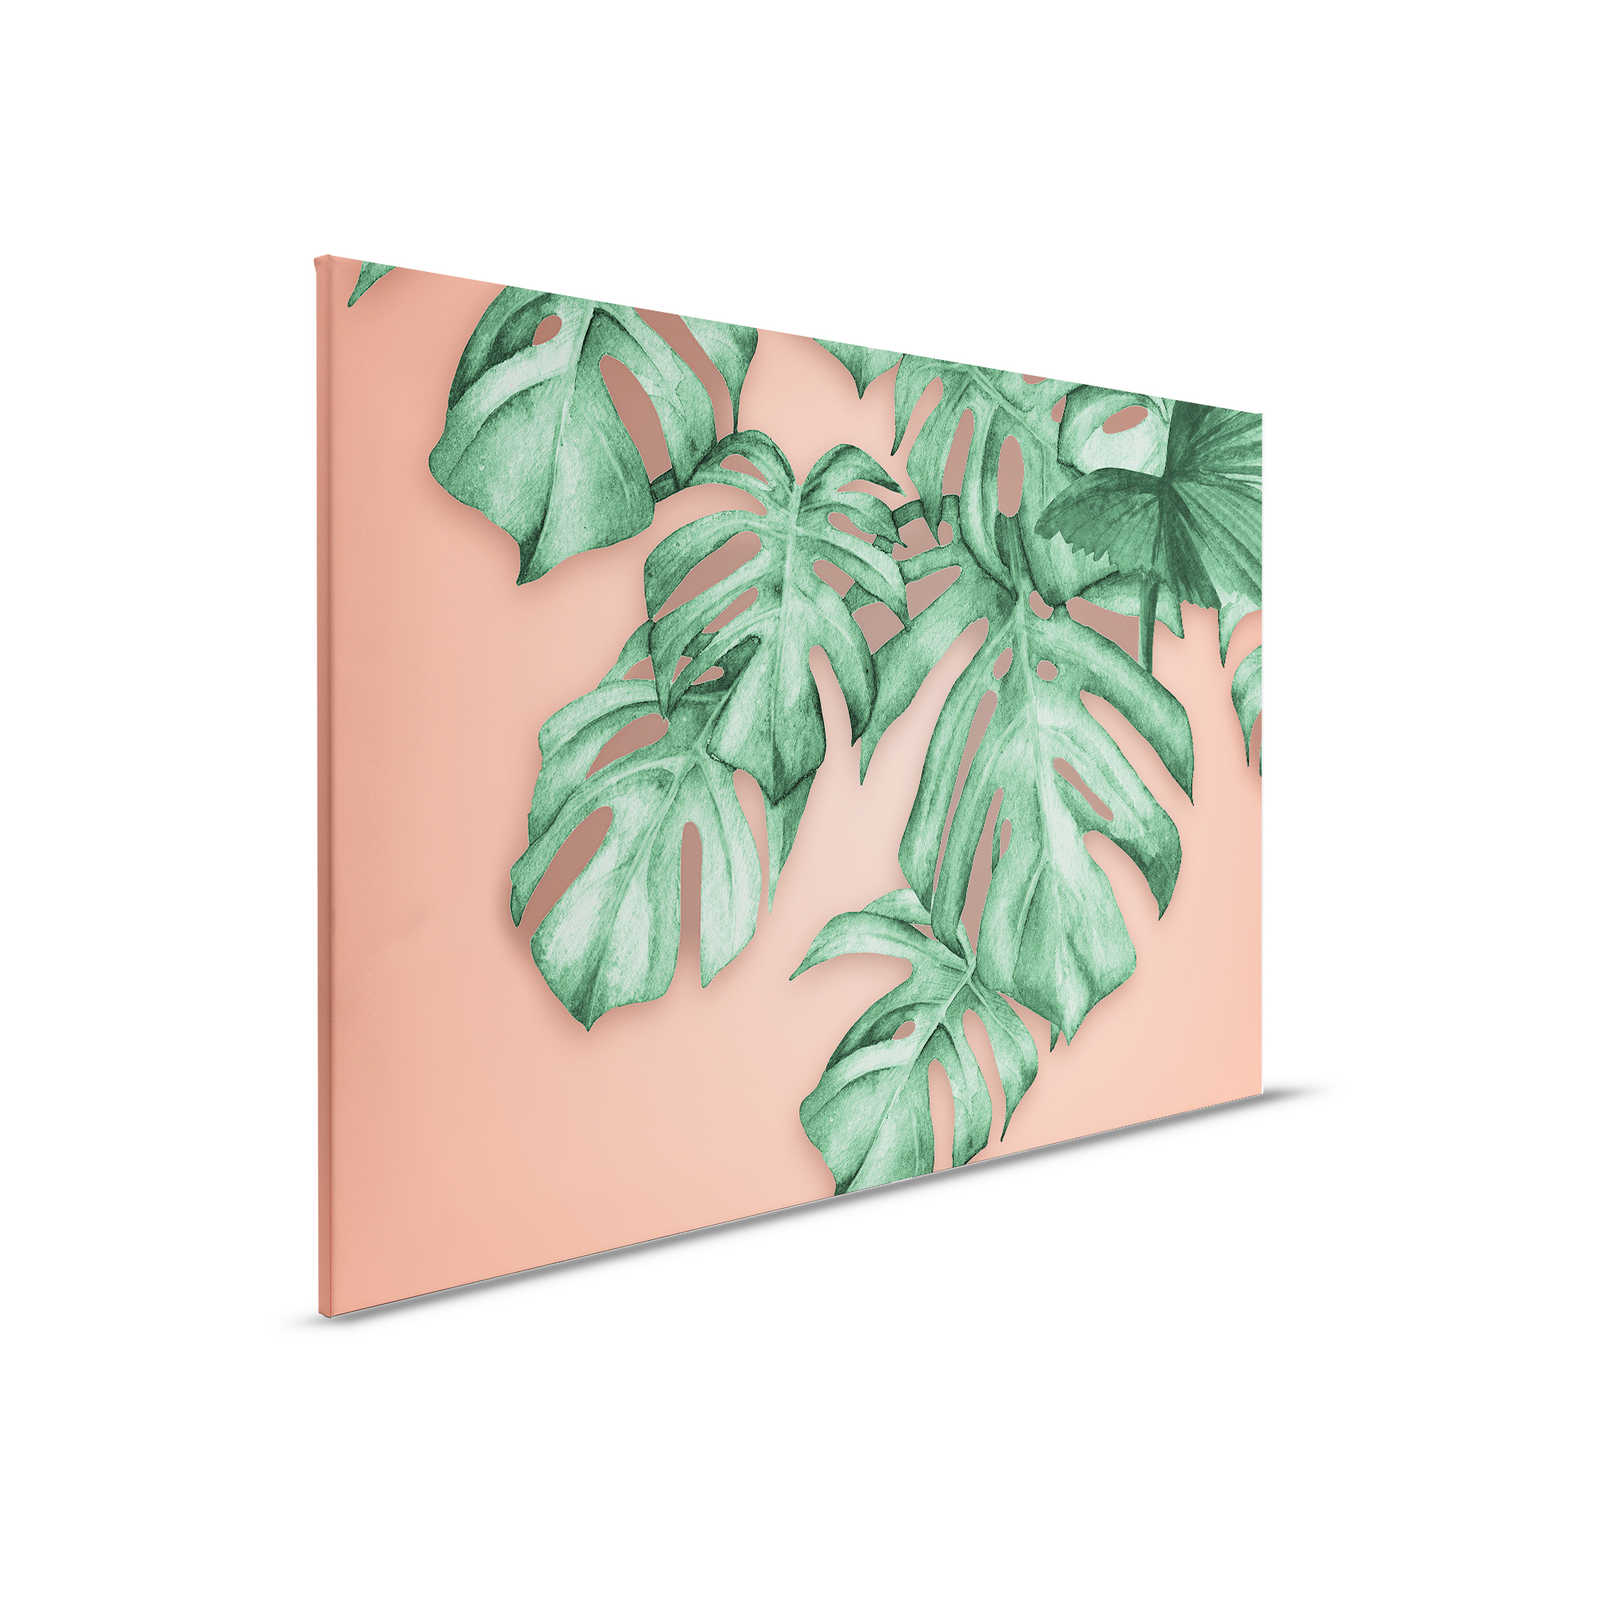 Canvas schilderij met tropische palmbladeren - 0,90 m x 0,60 m
